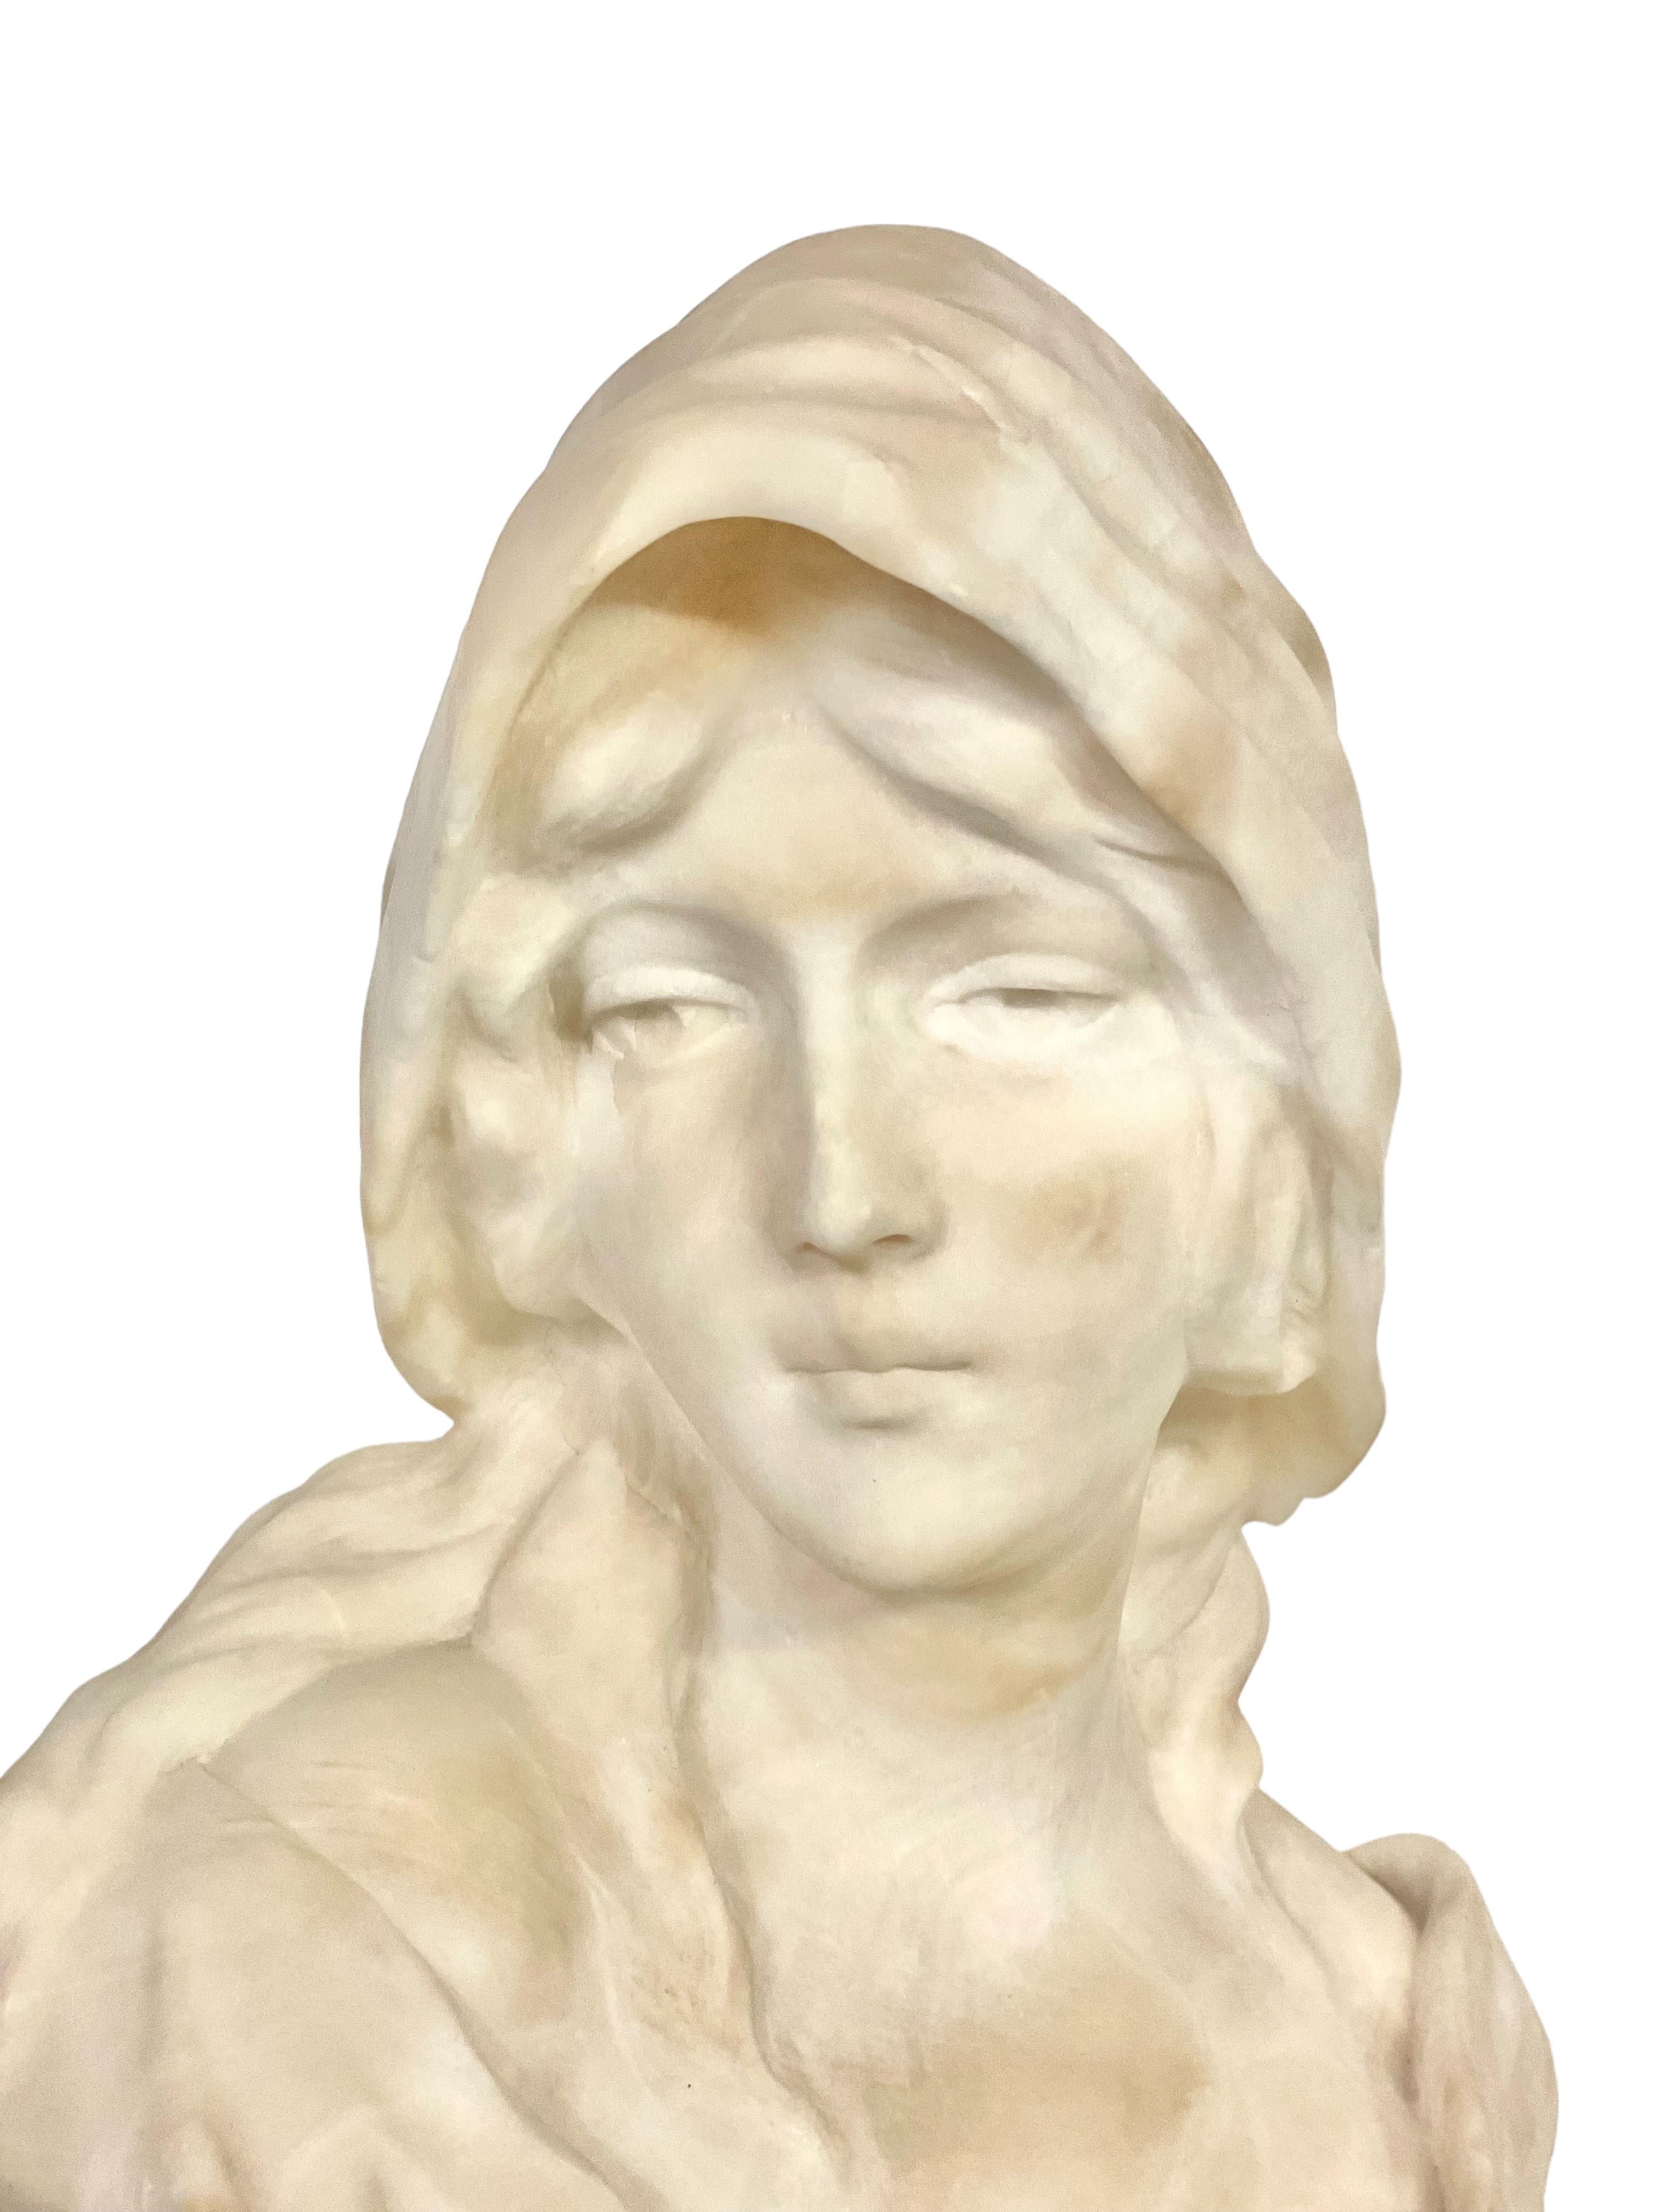 Voici un fascinant buste en albâtre du célèbre sculpteur Georges Morin (1874-1950). Cette pièce exquise met en scène une jeune femme dans un bustier délicatement boutonné, révélant un décolleté gracieux et de longs cheveux légèrement ondulés rangés